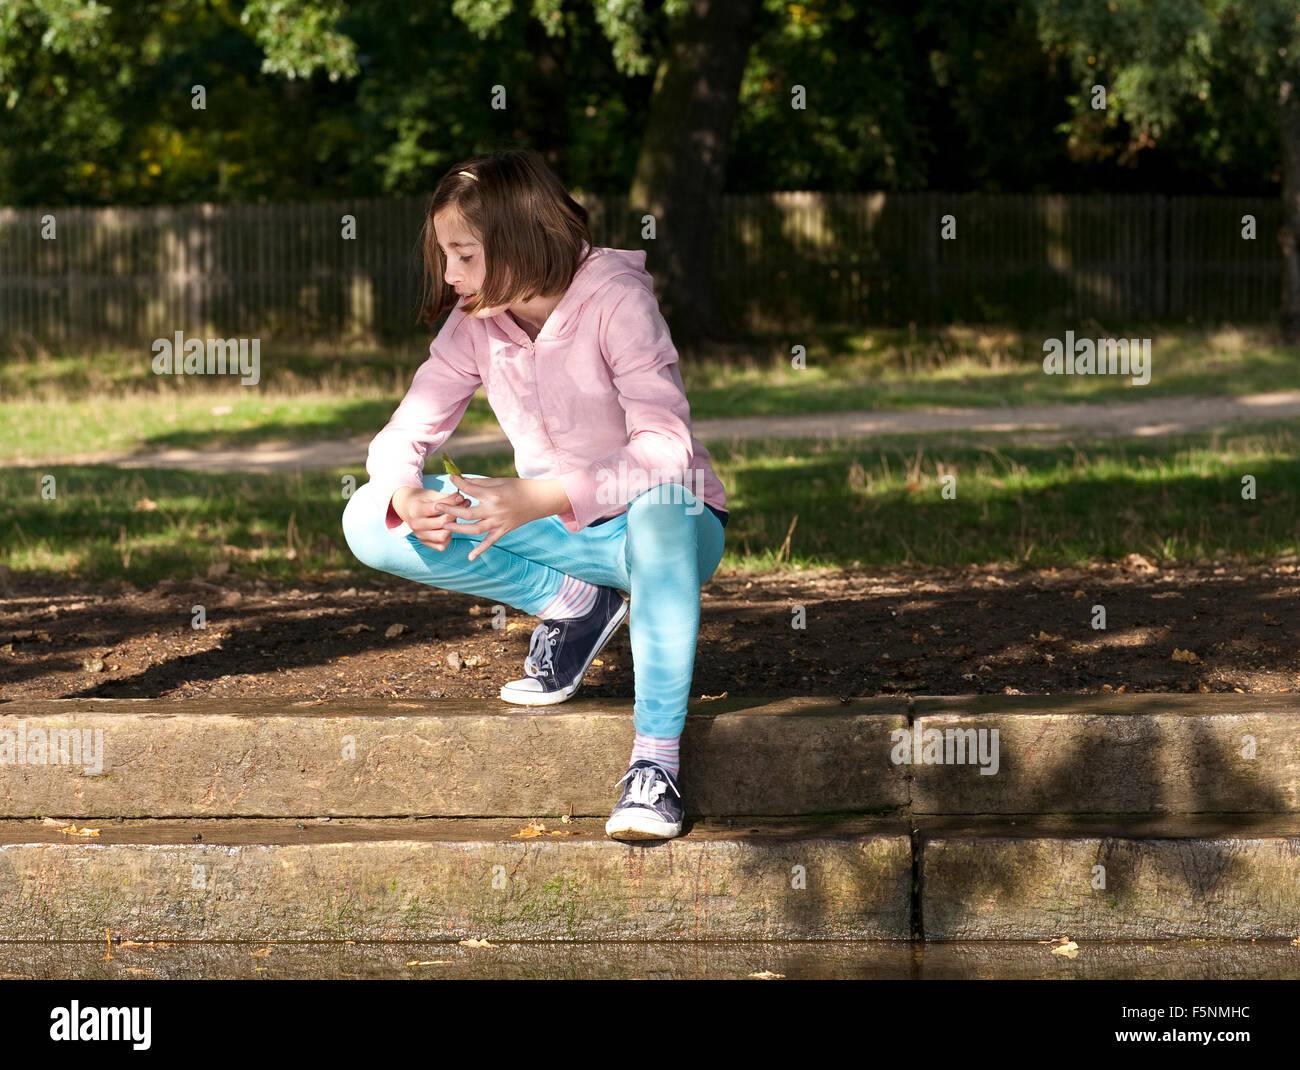 Una giovane ragazza squat molto elegantemente accanto a un flusso assente mindedly giocando con una foglia mentre è nel profondo del pensiero. Foto Stock